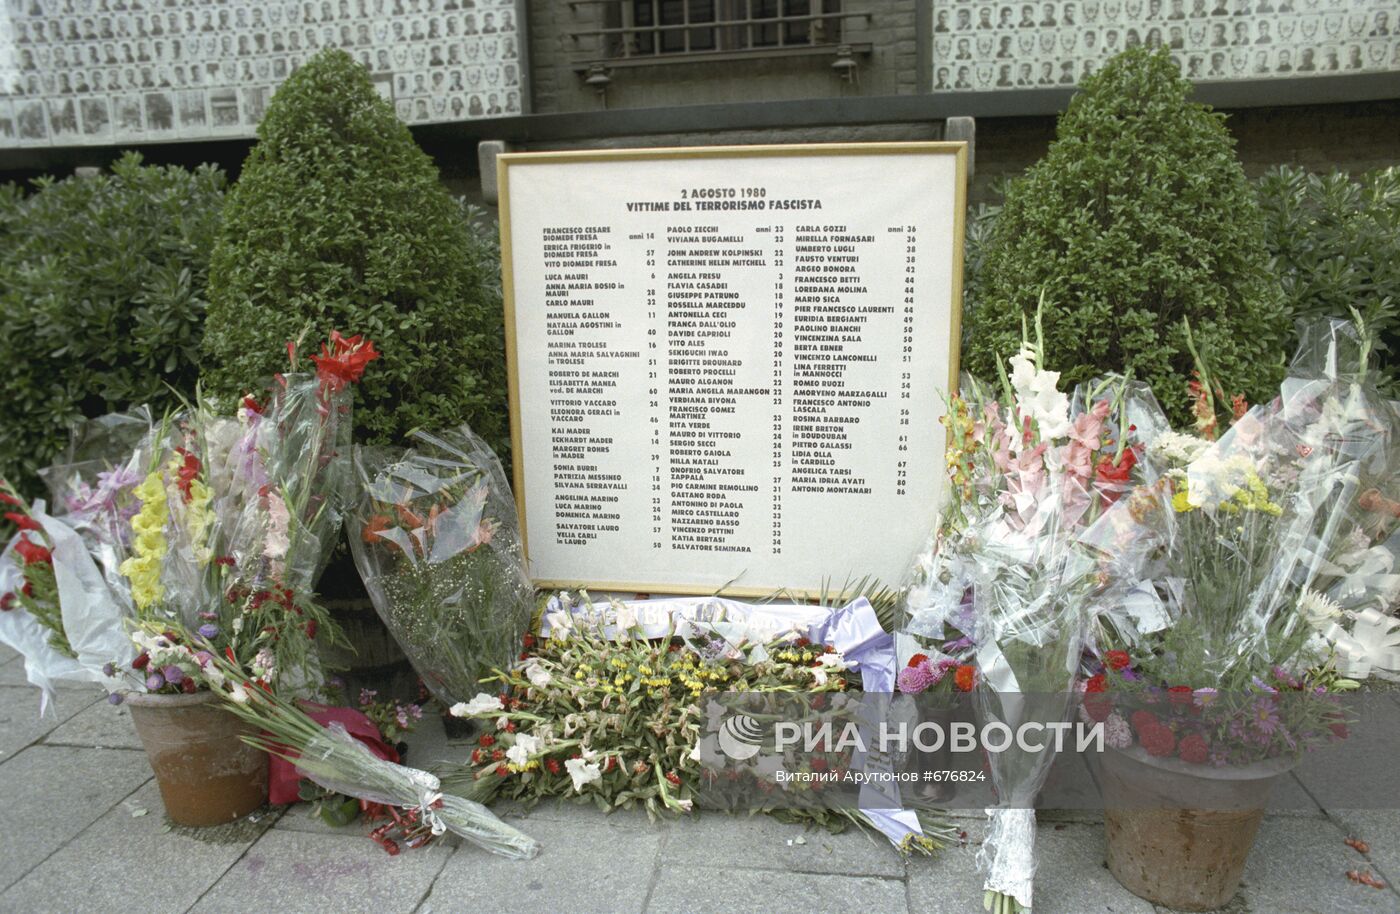 Мемориальная доска в память о жертвах теракта